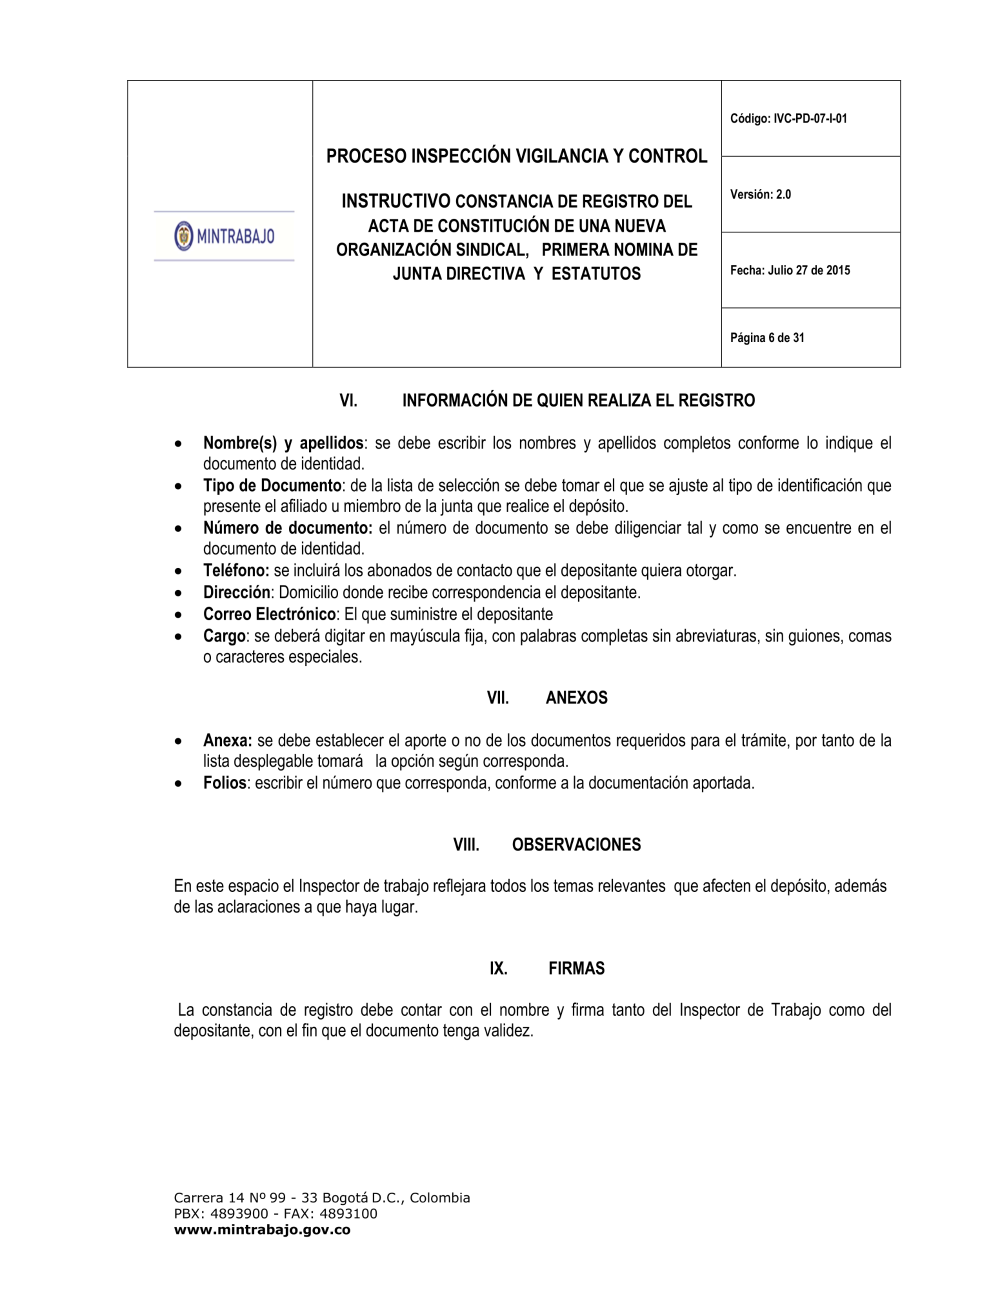 Formatos Convenciones - Archivo Sindical Ministerio - Ministerio del trabajo